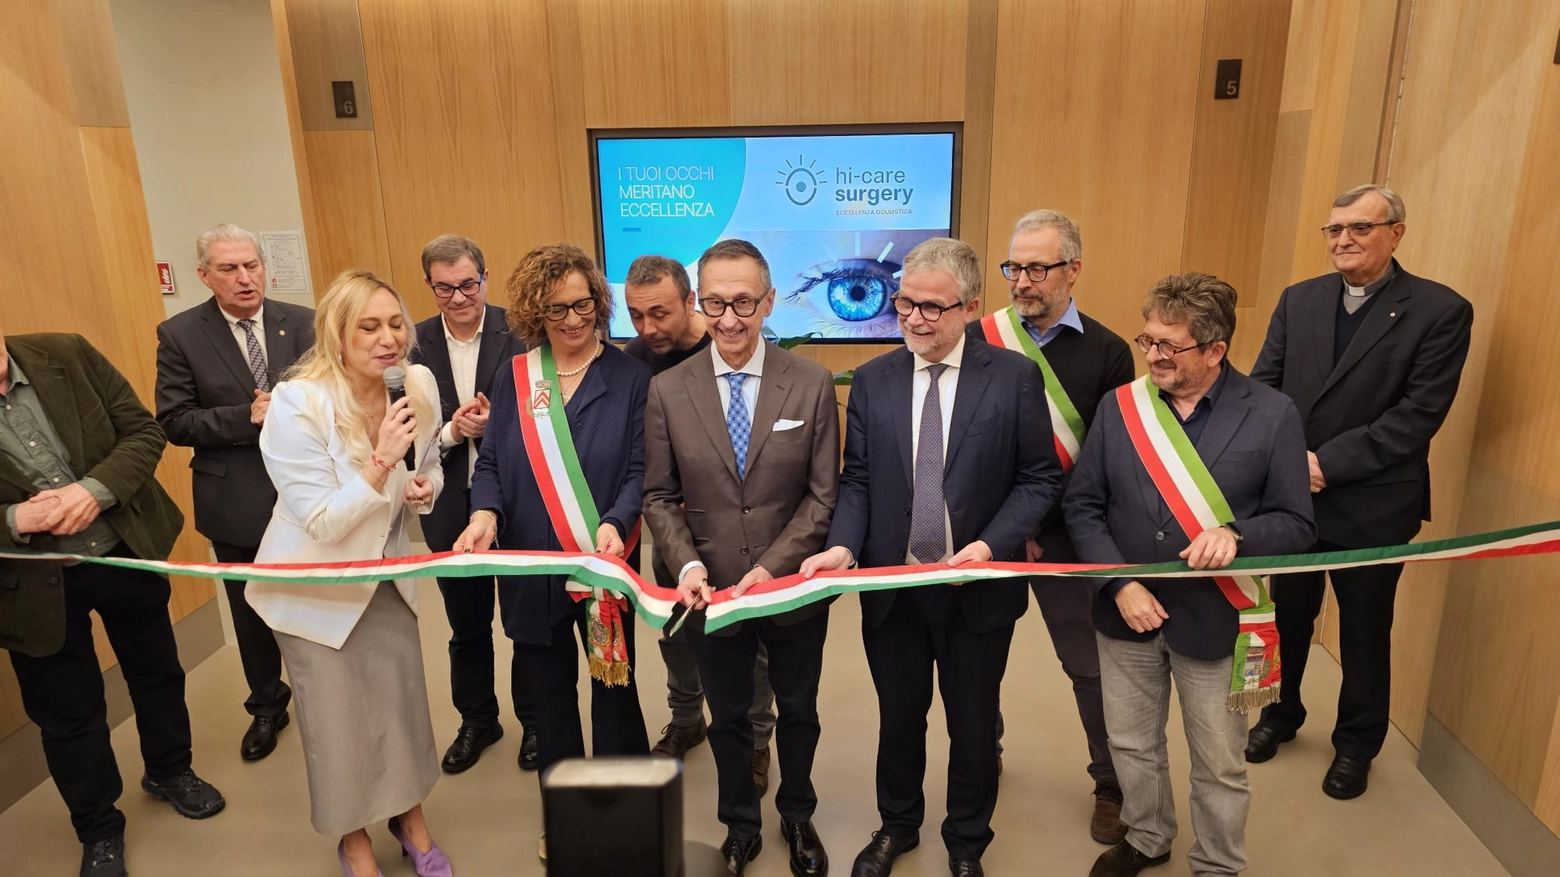 L'inaugurazione del centro oculistico Hi-care surgery a Lastra a Signa